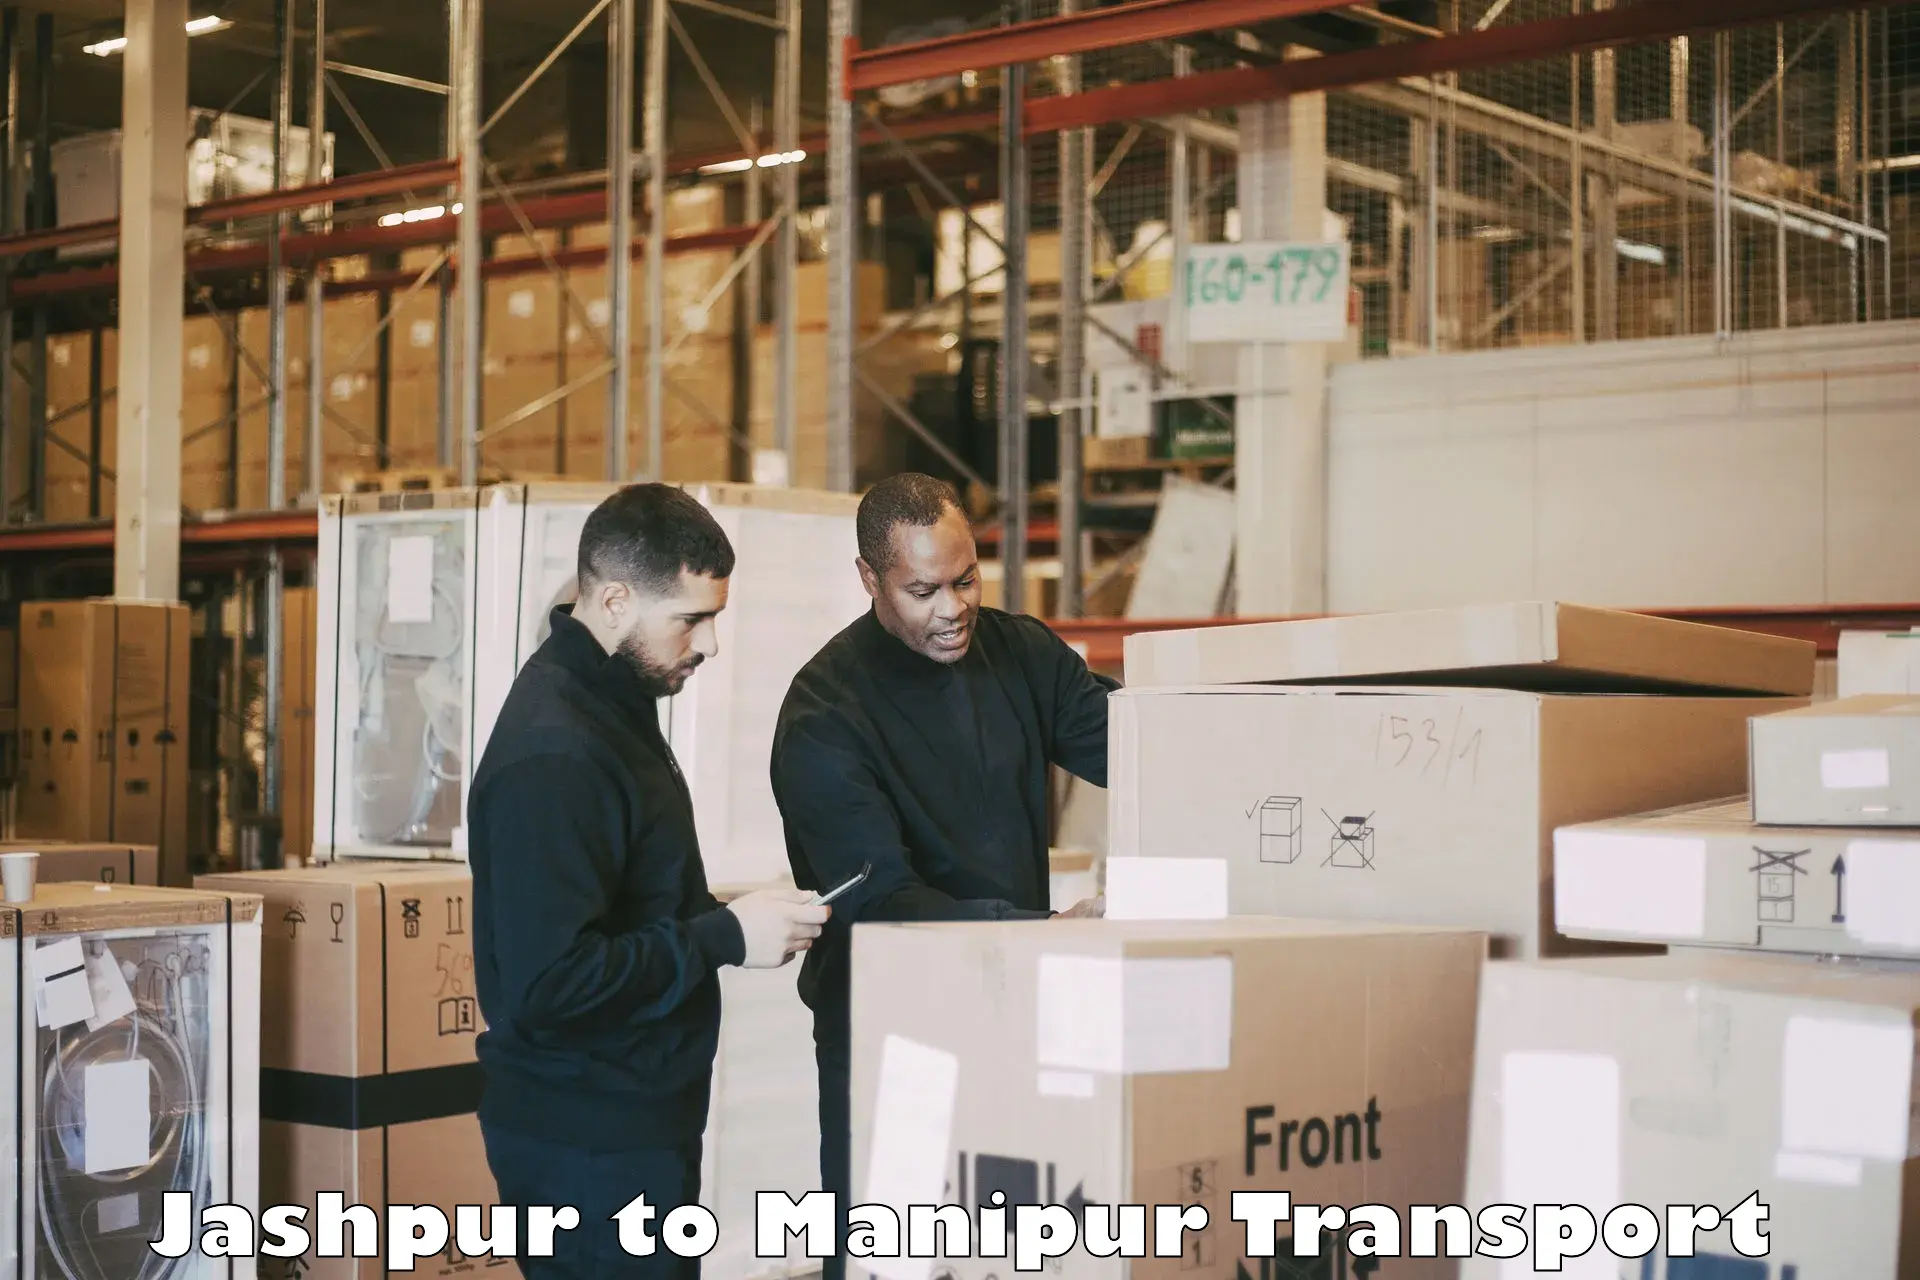 Interstate transport services Jashpur to Manipur